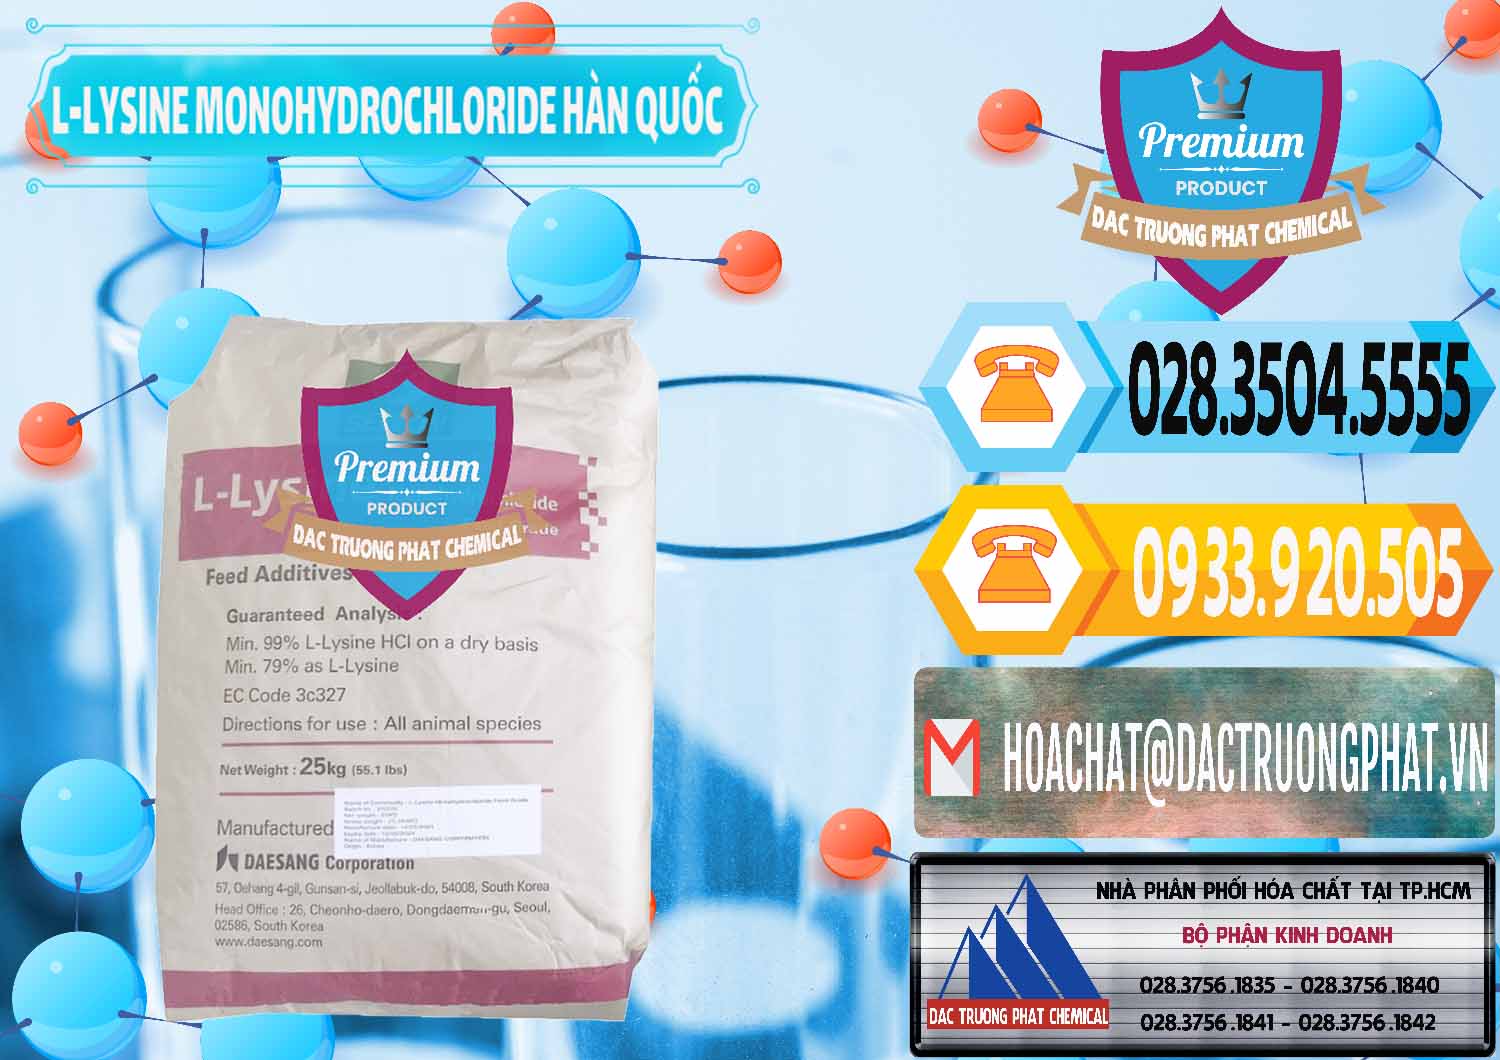 Nơi bán - cung cấp L-Lysine Monohydrochloride Feed Grade Sewon Hàn Quốc Korea - 0302 - Công ty chuyên phân phối và bán hóa chất tại TP.HCM - hoachattayrua.net